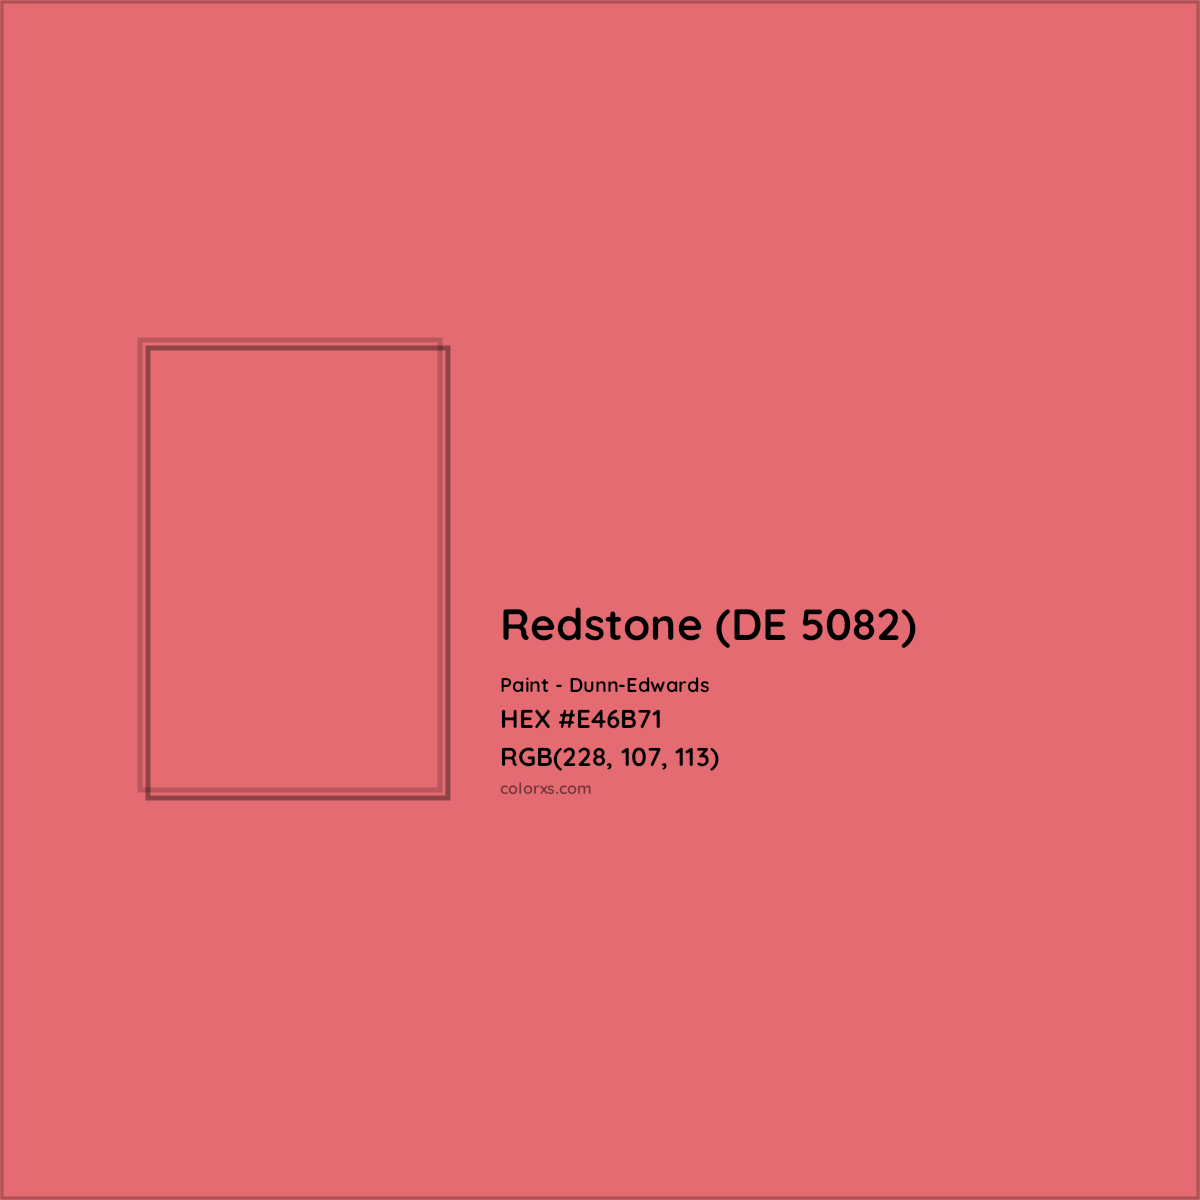 HEX #E46B71 Redstone (DE 5082) Paint Dunn-Edwards - Color Code